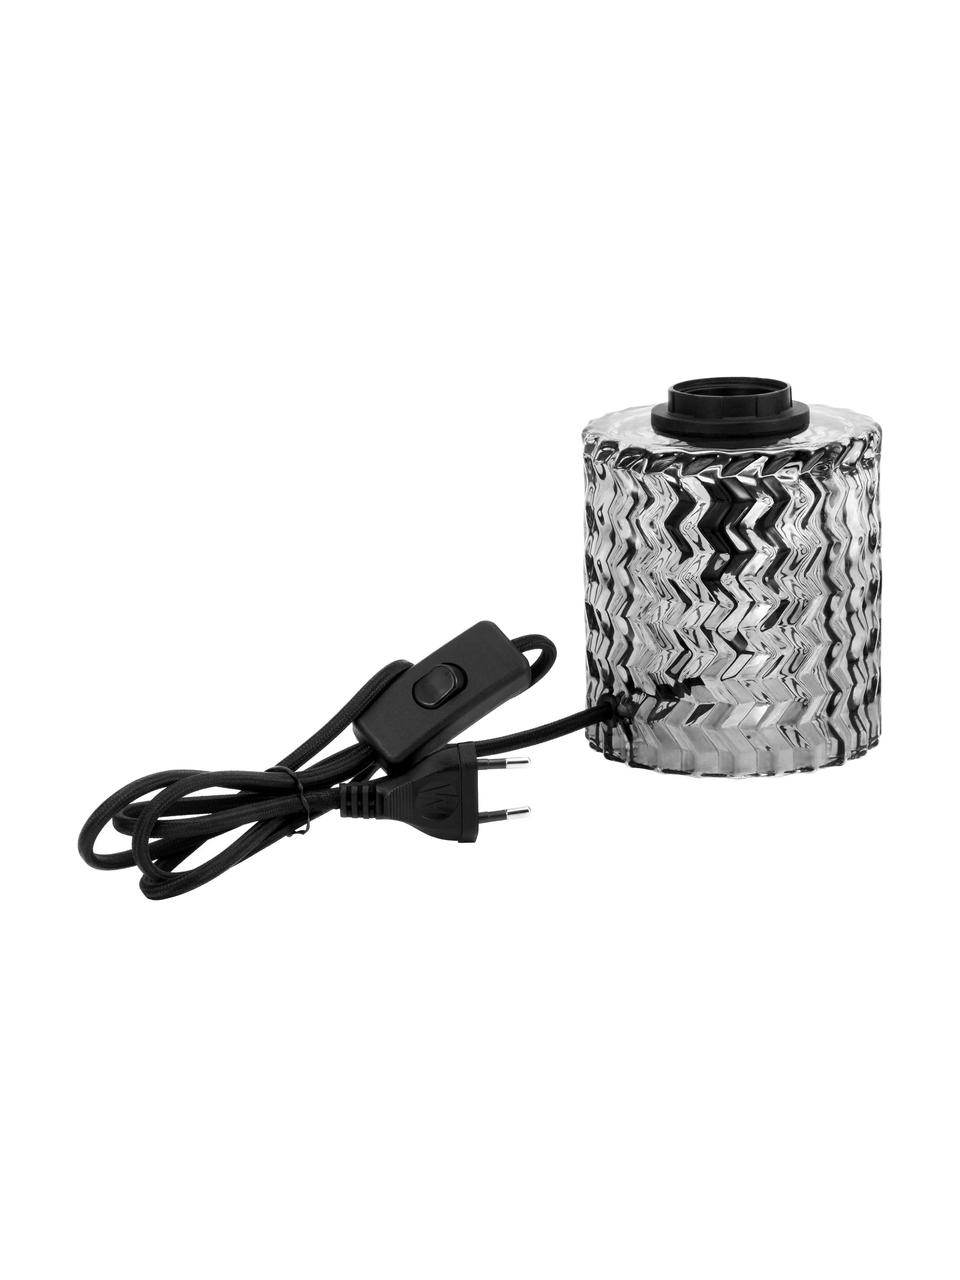 Lámpara de noche Crystal Smoke, Cable: cubierto en tela, Gris, Ø 11 x Al 13 cm